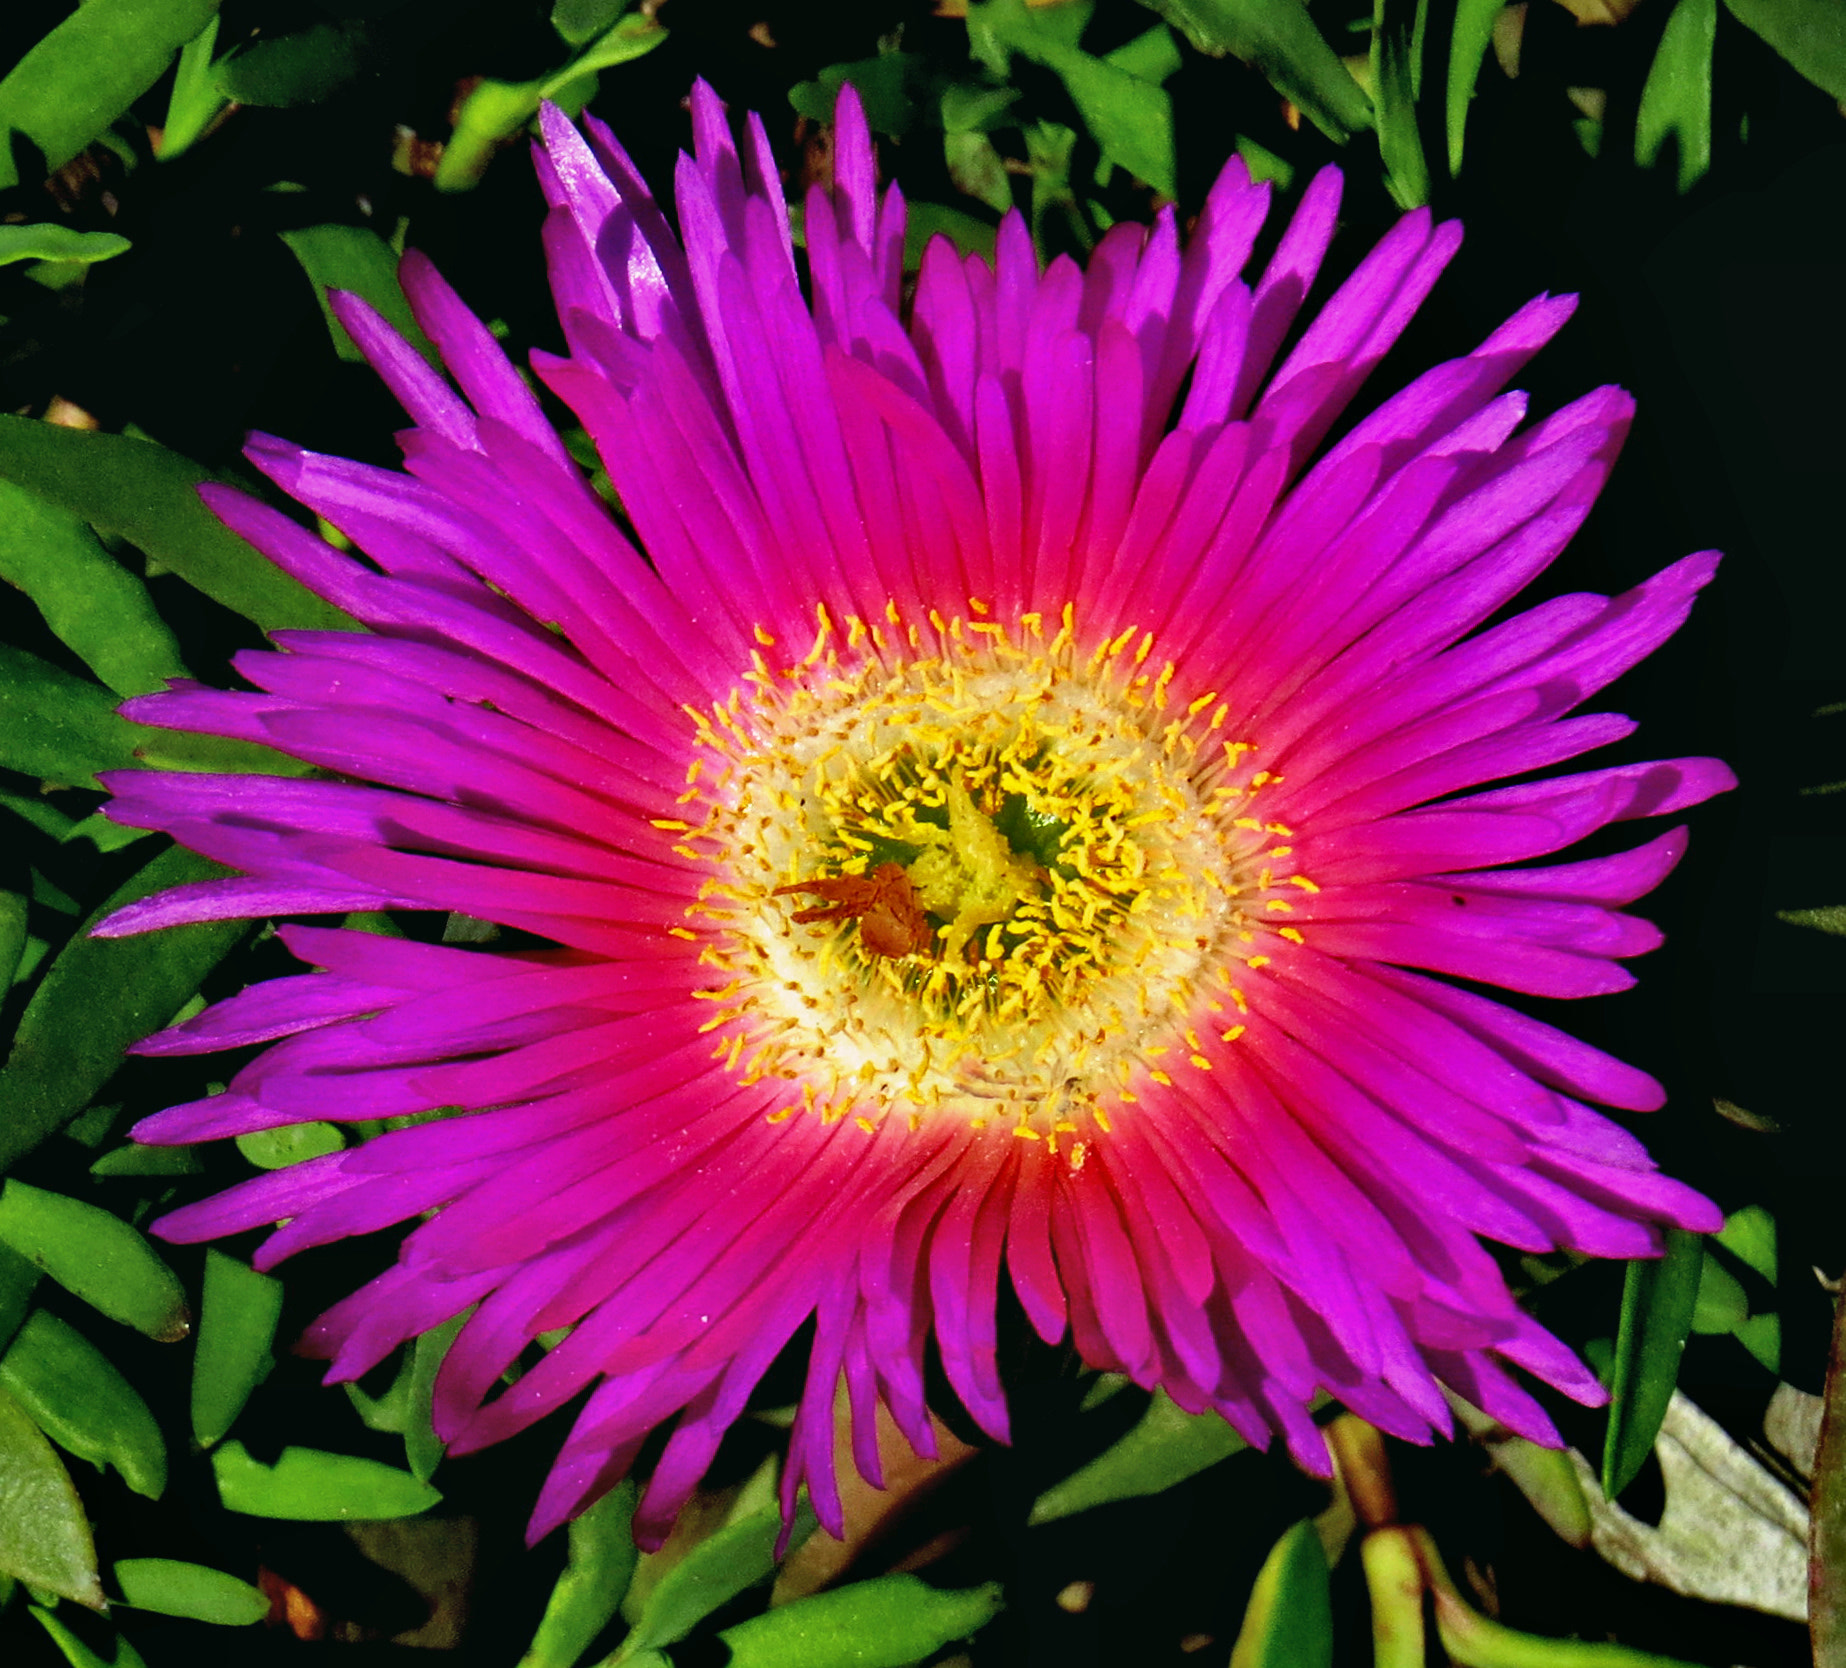 Canon PowerShot SX50 HS + 4.3 - 215.0 mm sample photo. A purple dandelion flower photography